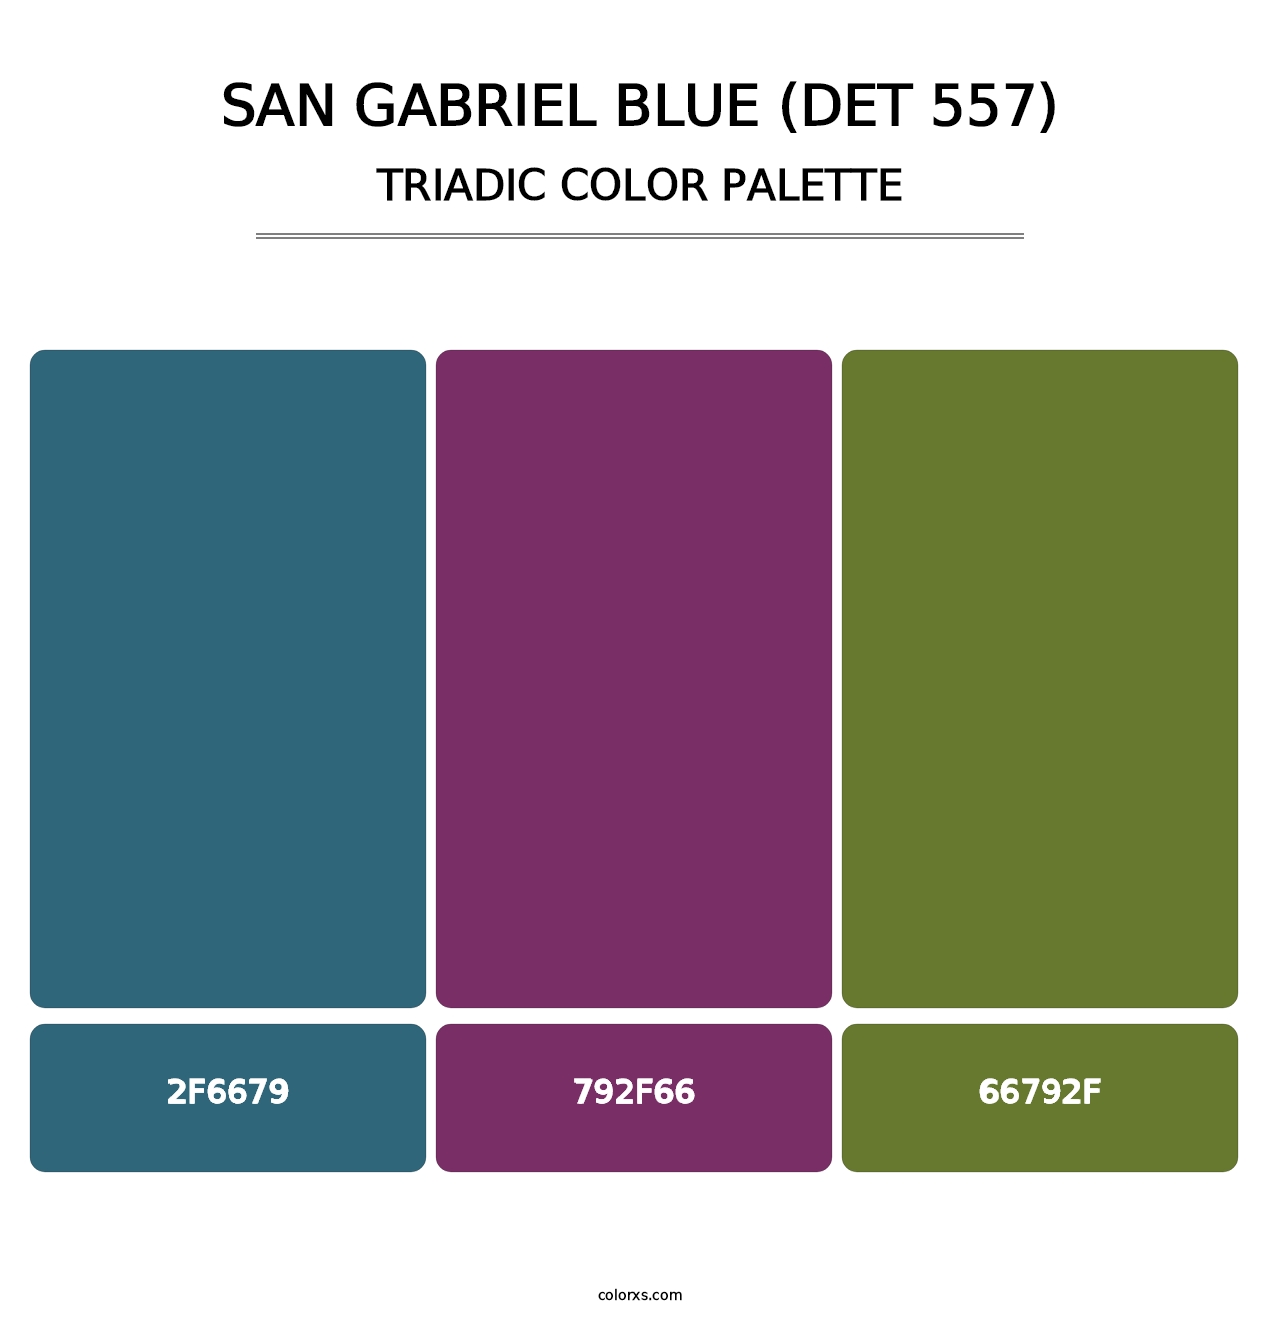 San Gabriel Blue (DET 557) - Triadic Color Palette